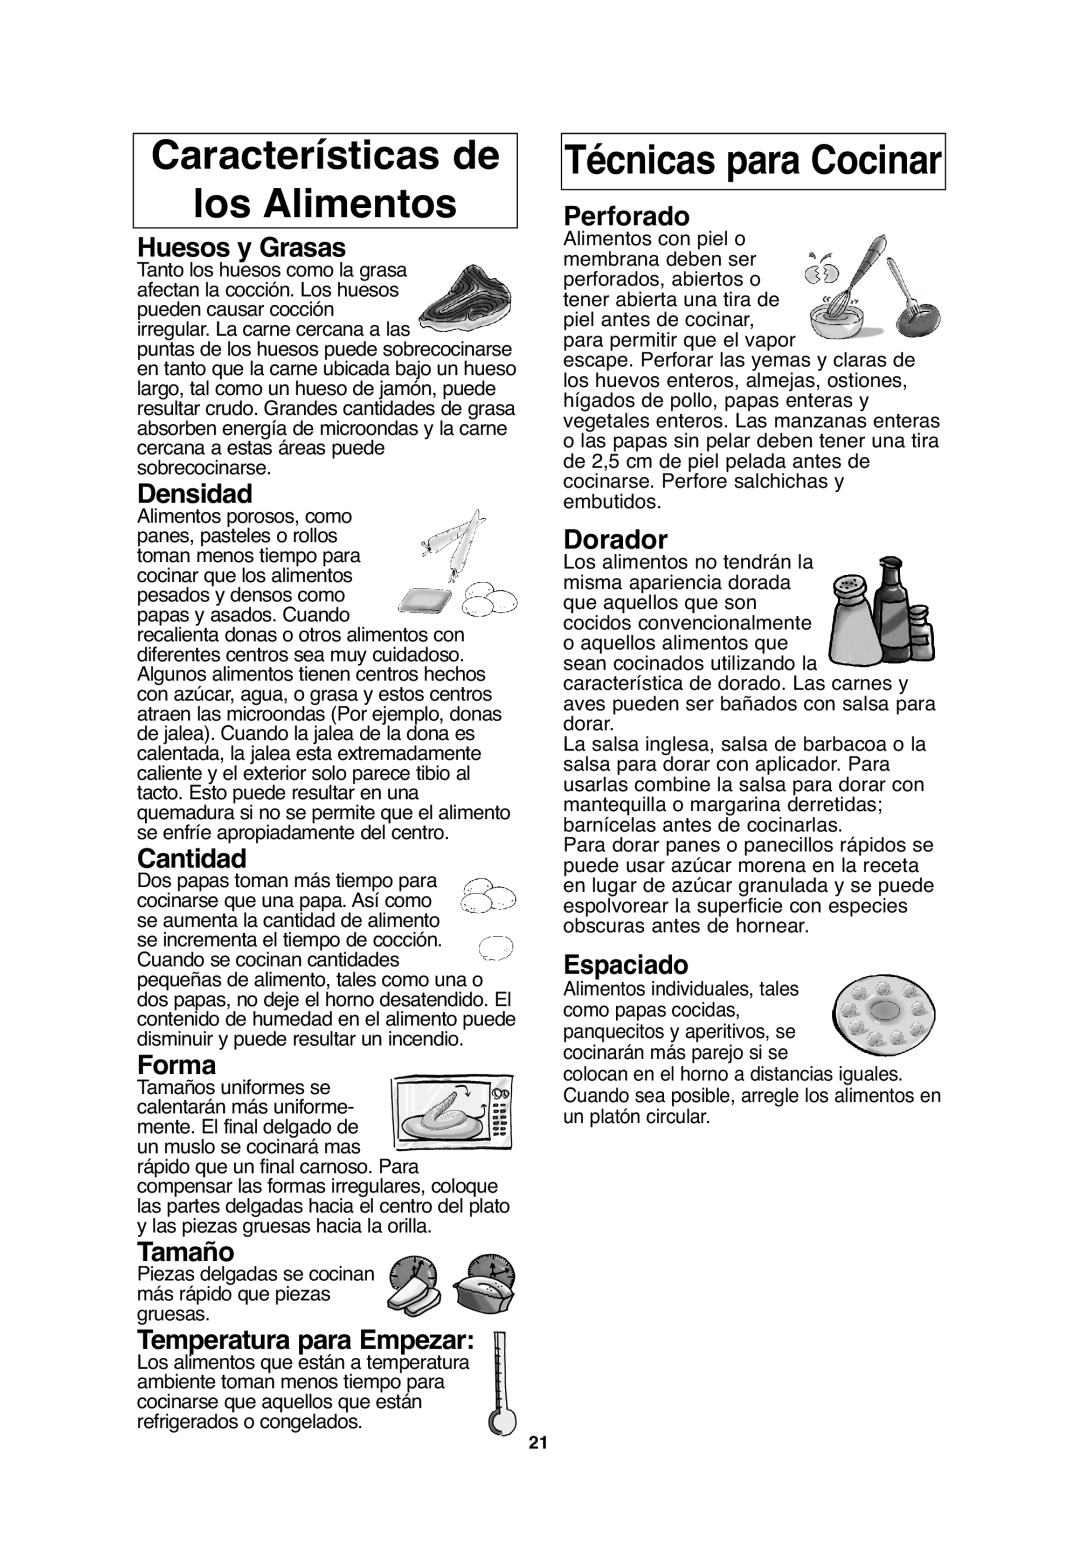 Panasonic NN-SN656 Características de los Alimentos, Técnicas para Cocinar, Huesos y Grasas, Densidad, Cantidad, Forma 